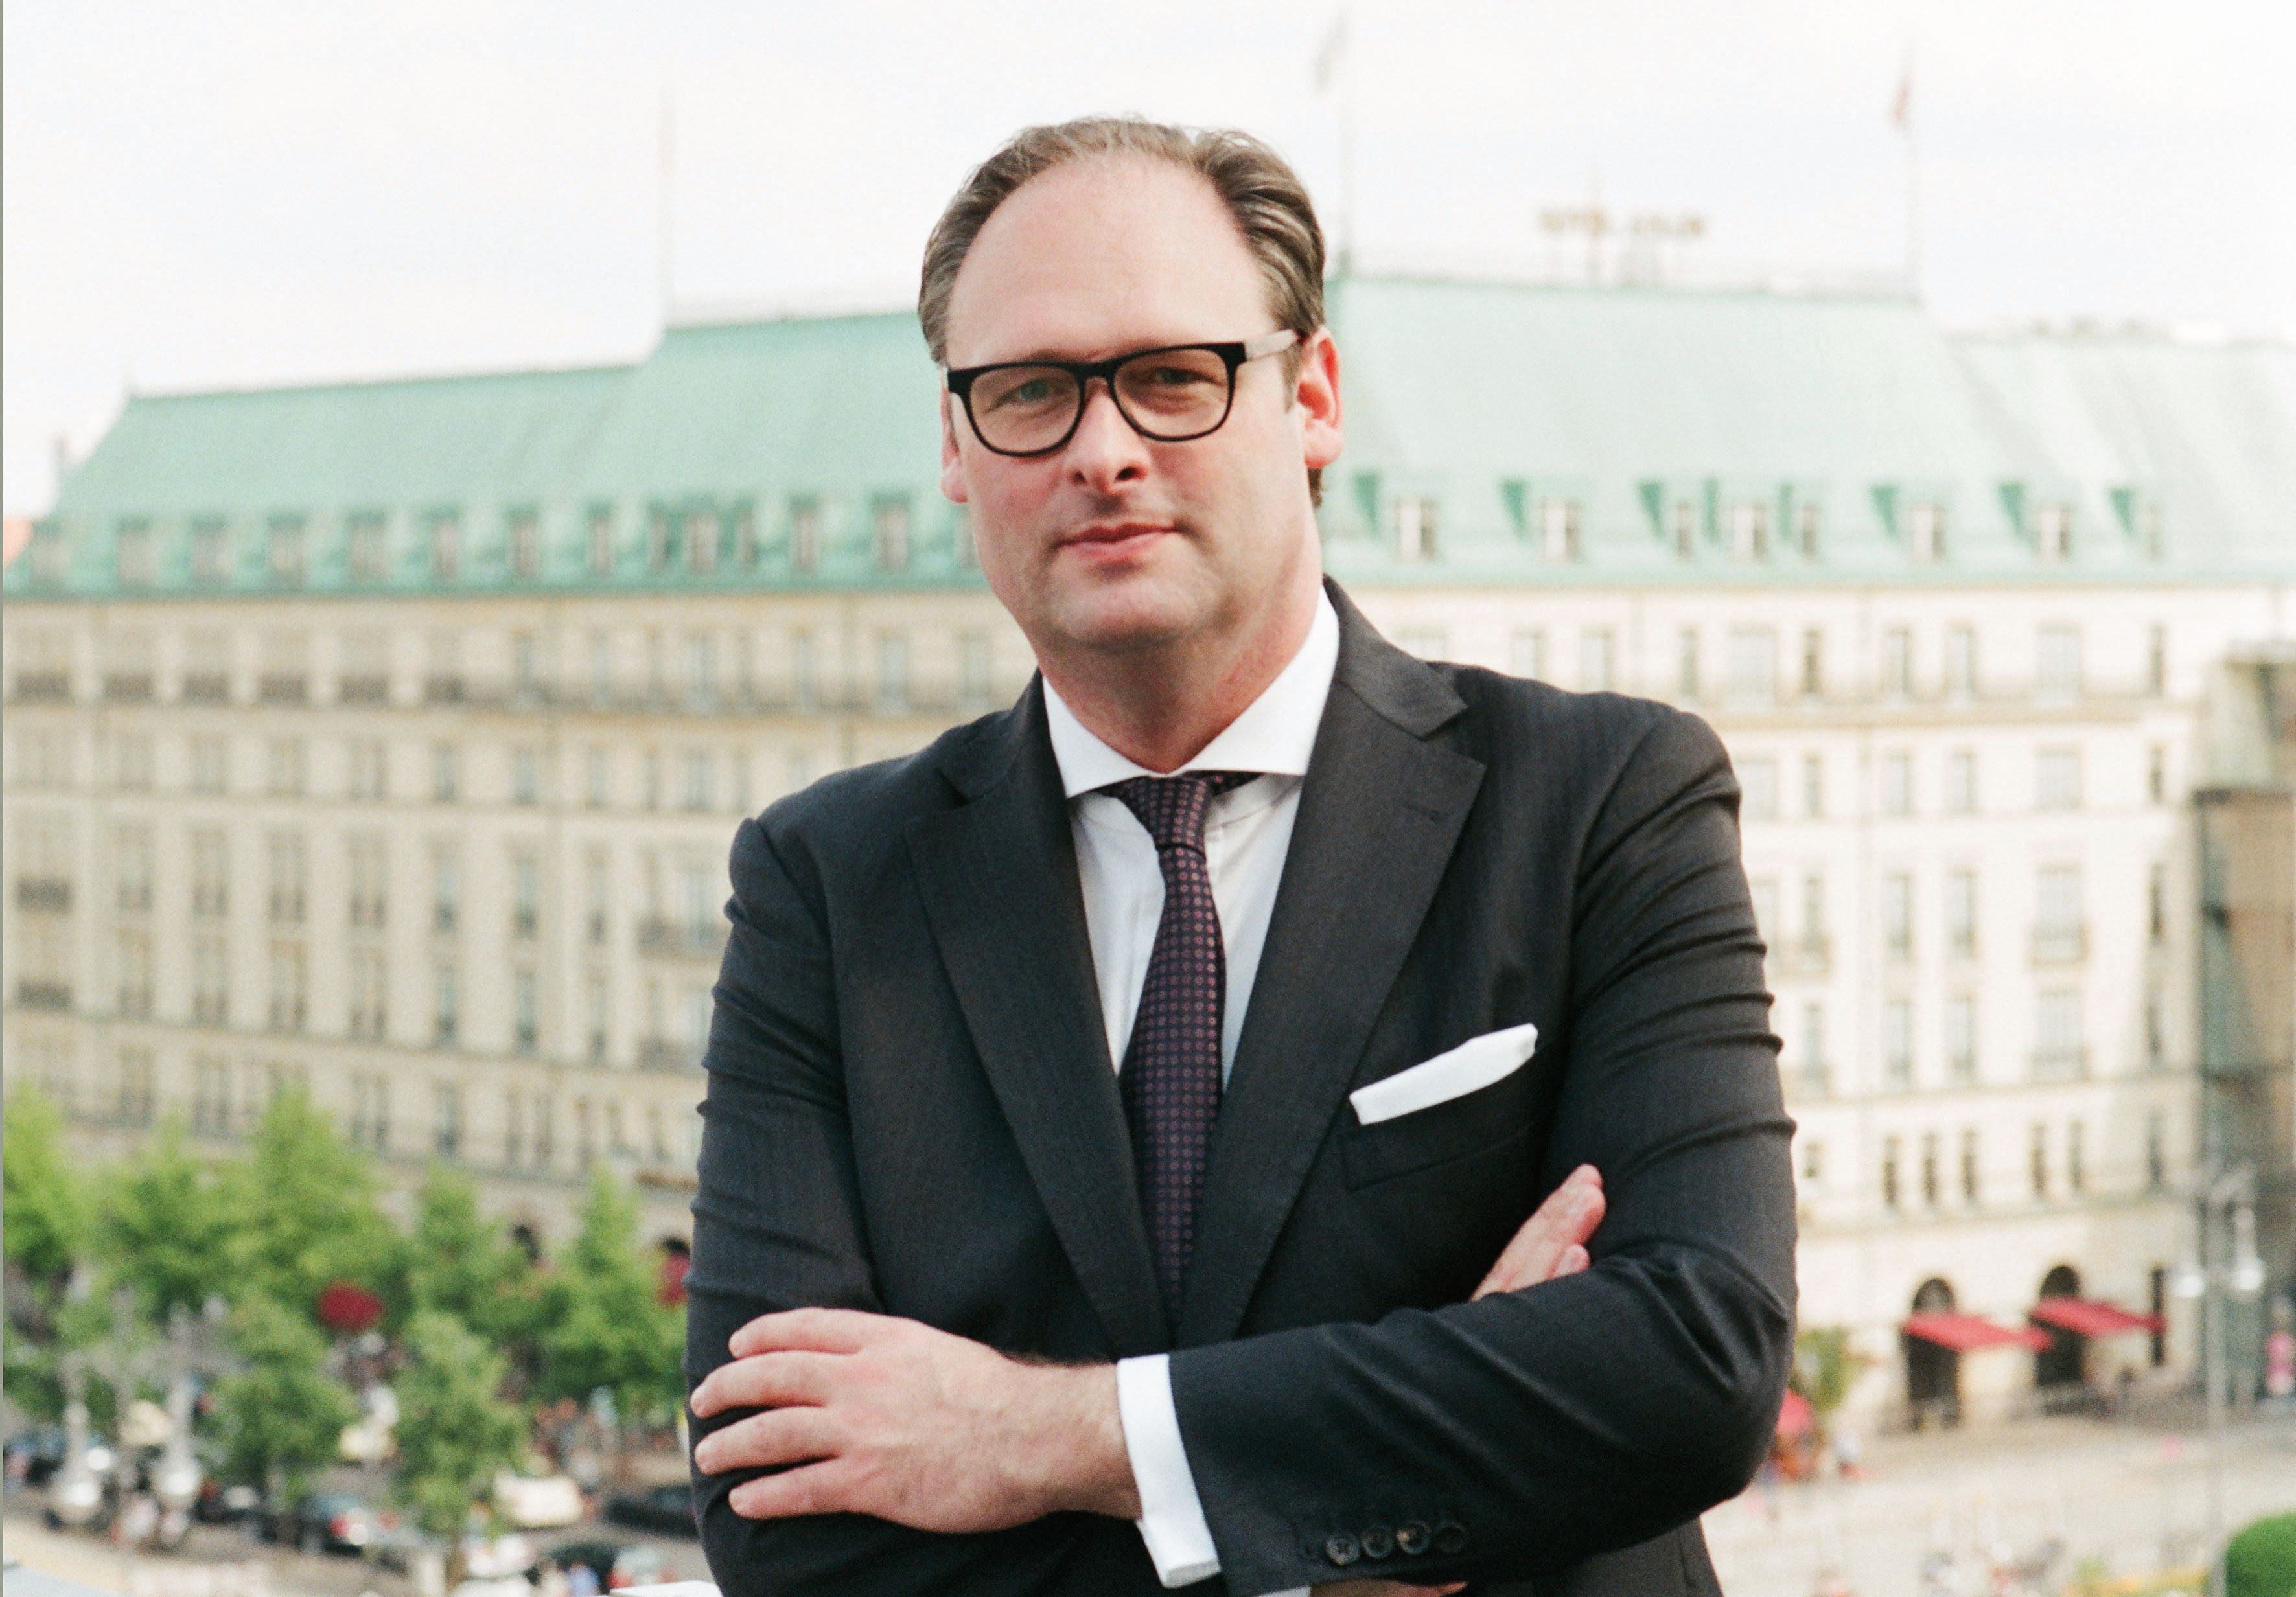 Emile Bootsma ist zu Recht respektierter “Hotel-Manager des Jahres 2016”